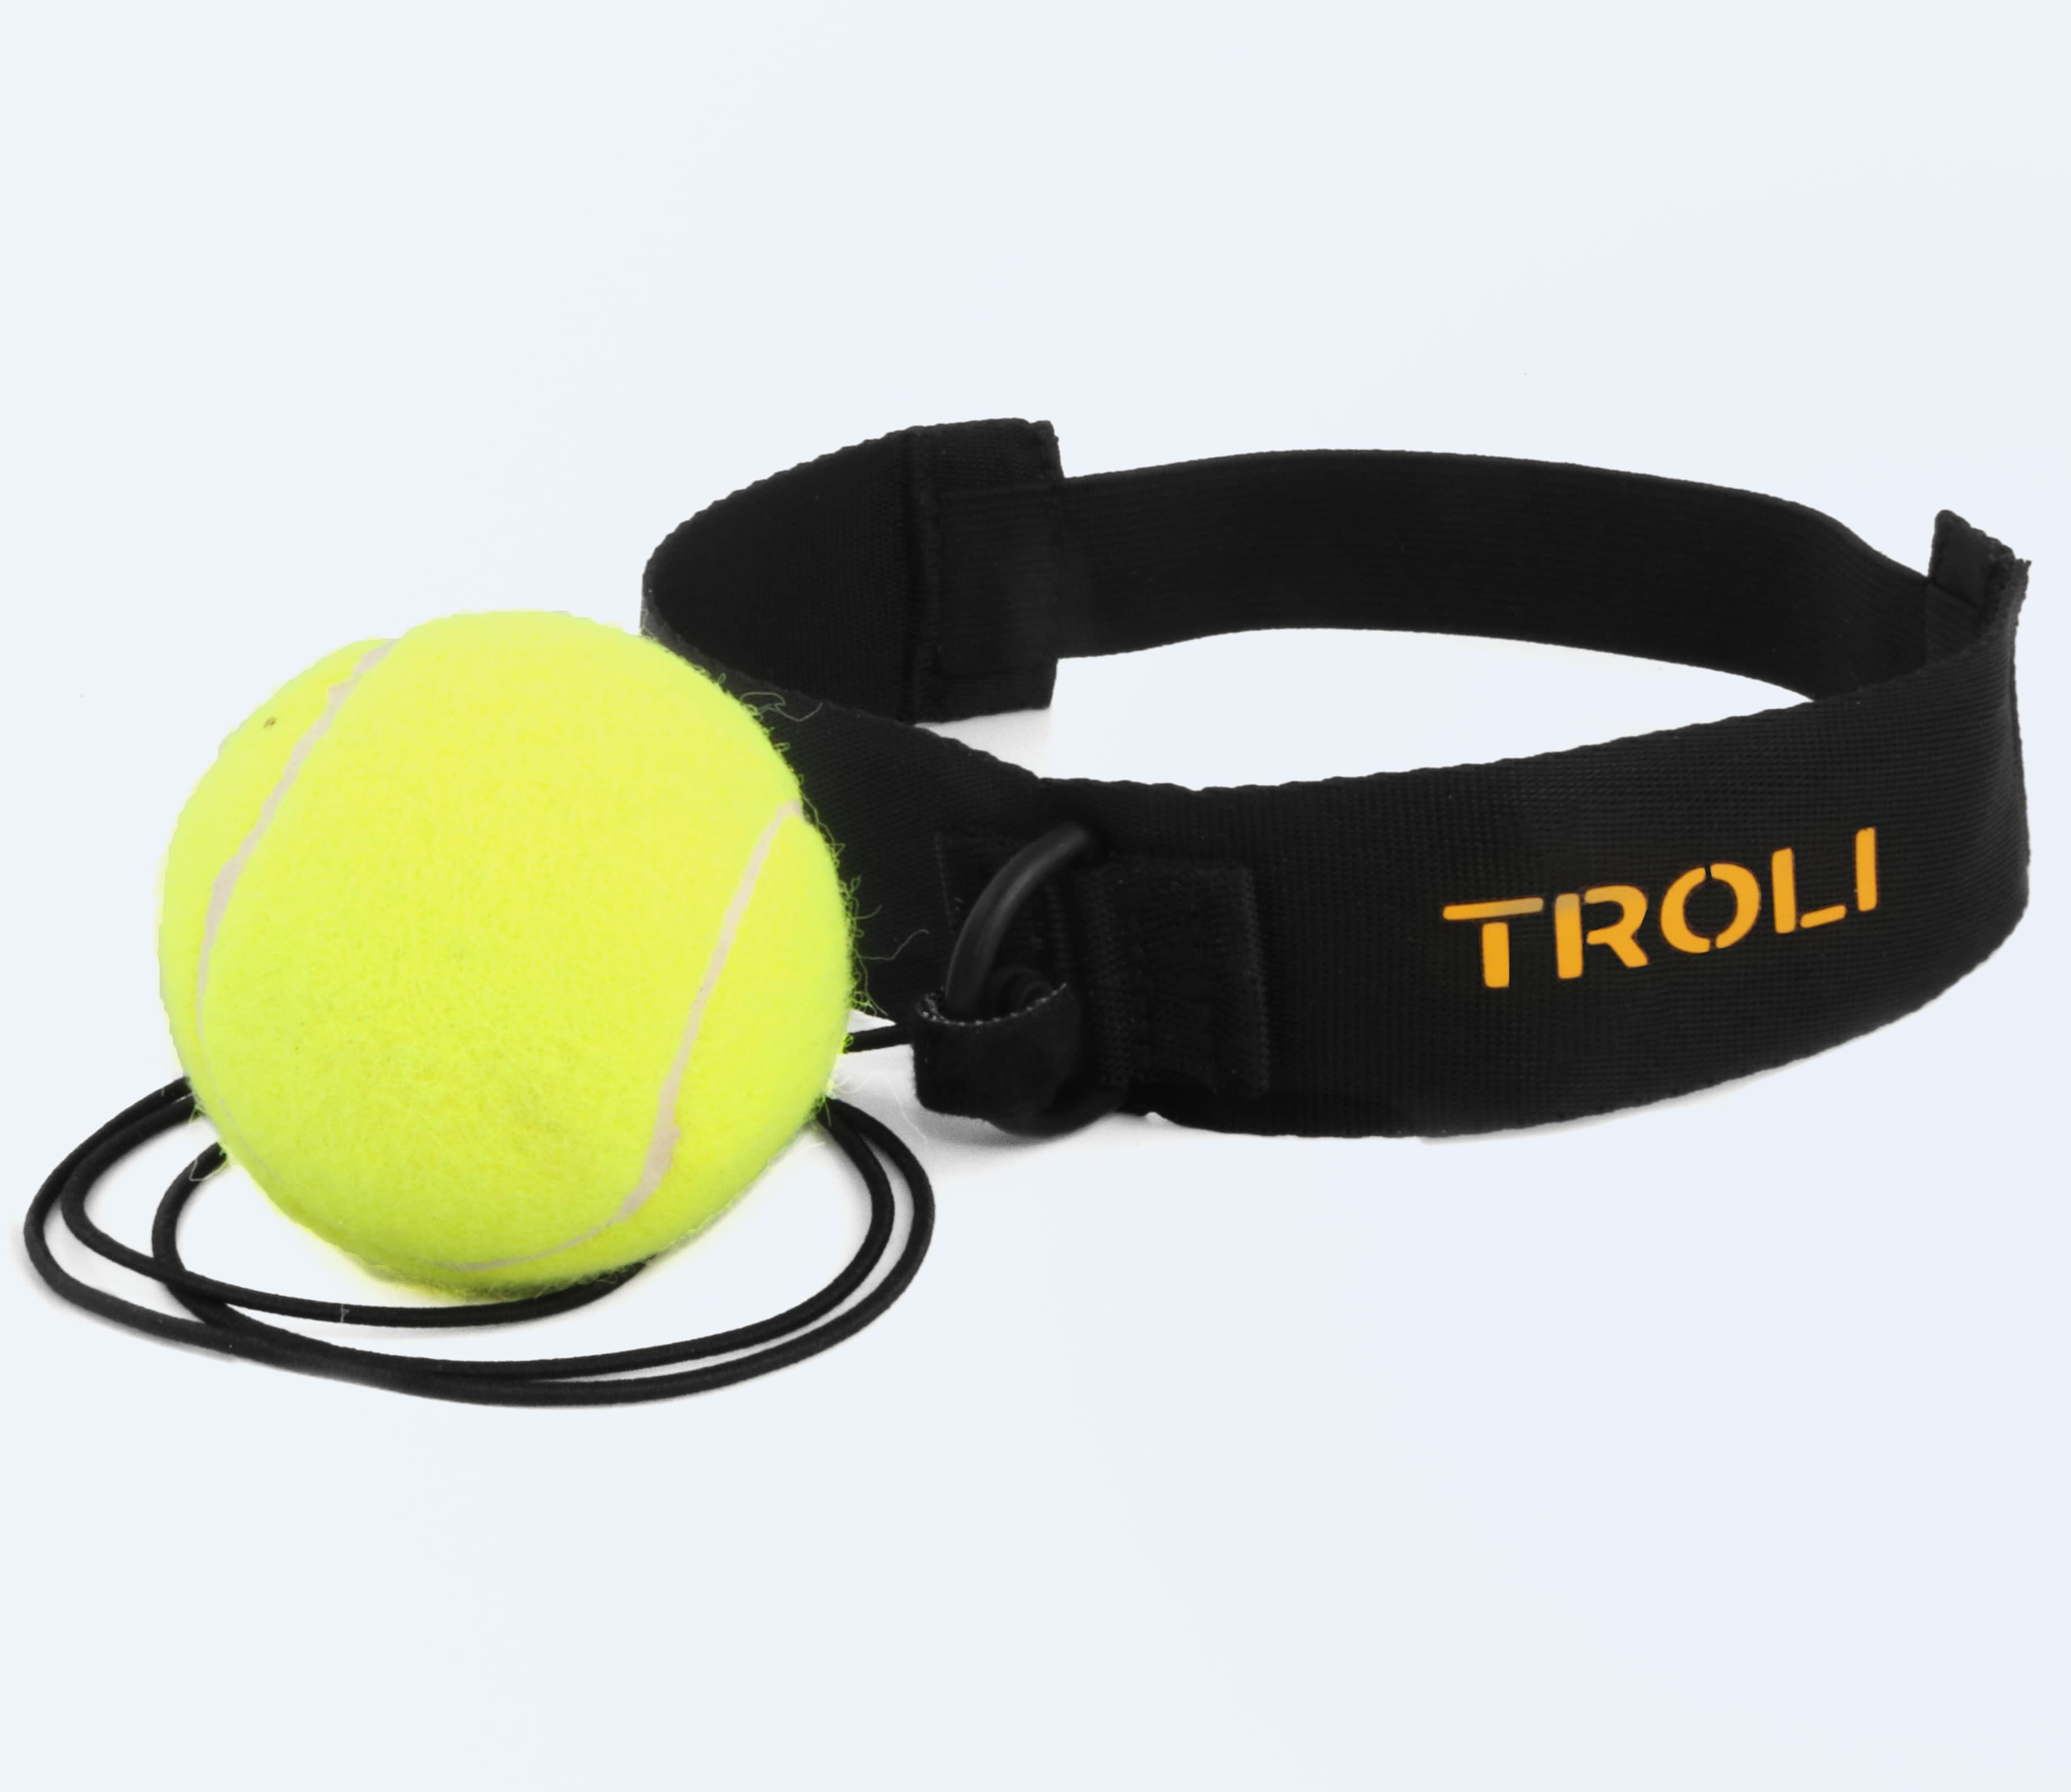 Fihgtball, мяч для отработки ударов — файтбол,  теннисный шарик на резинке — тренажер шарик для бокса на голову